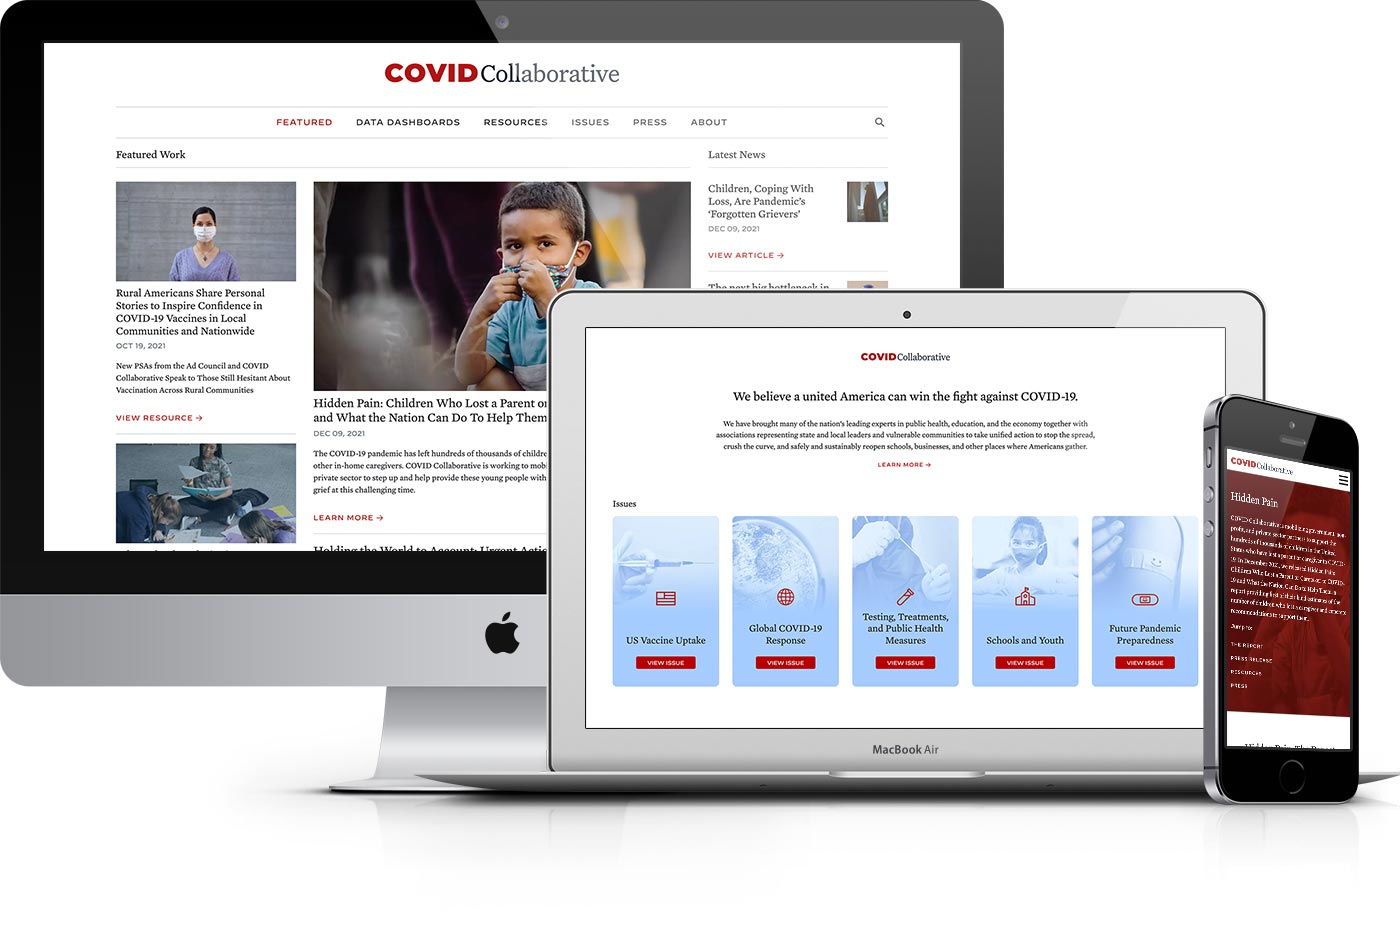 COVID Collaborfative website